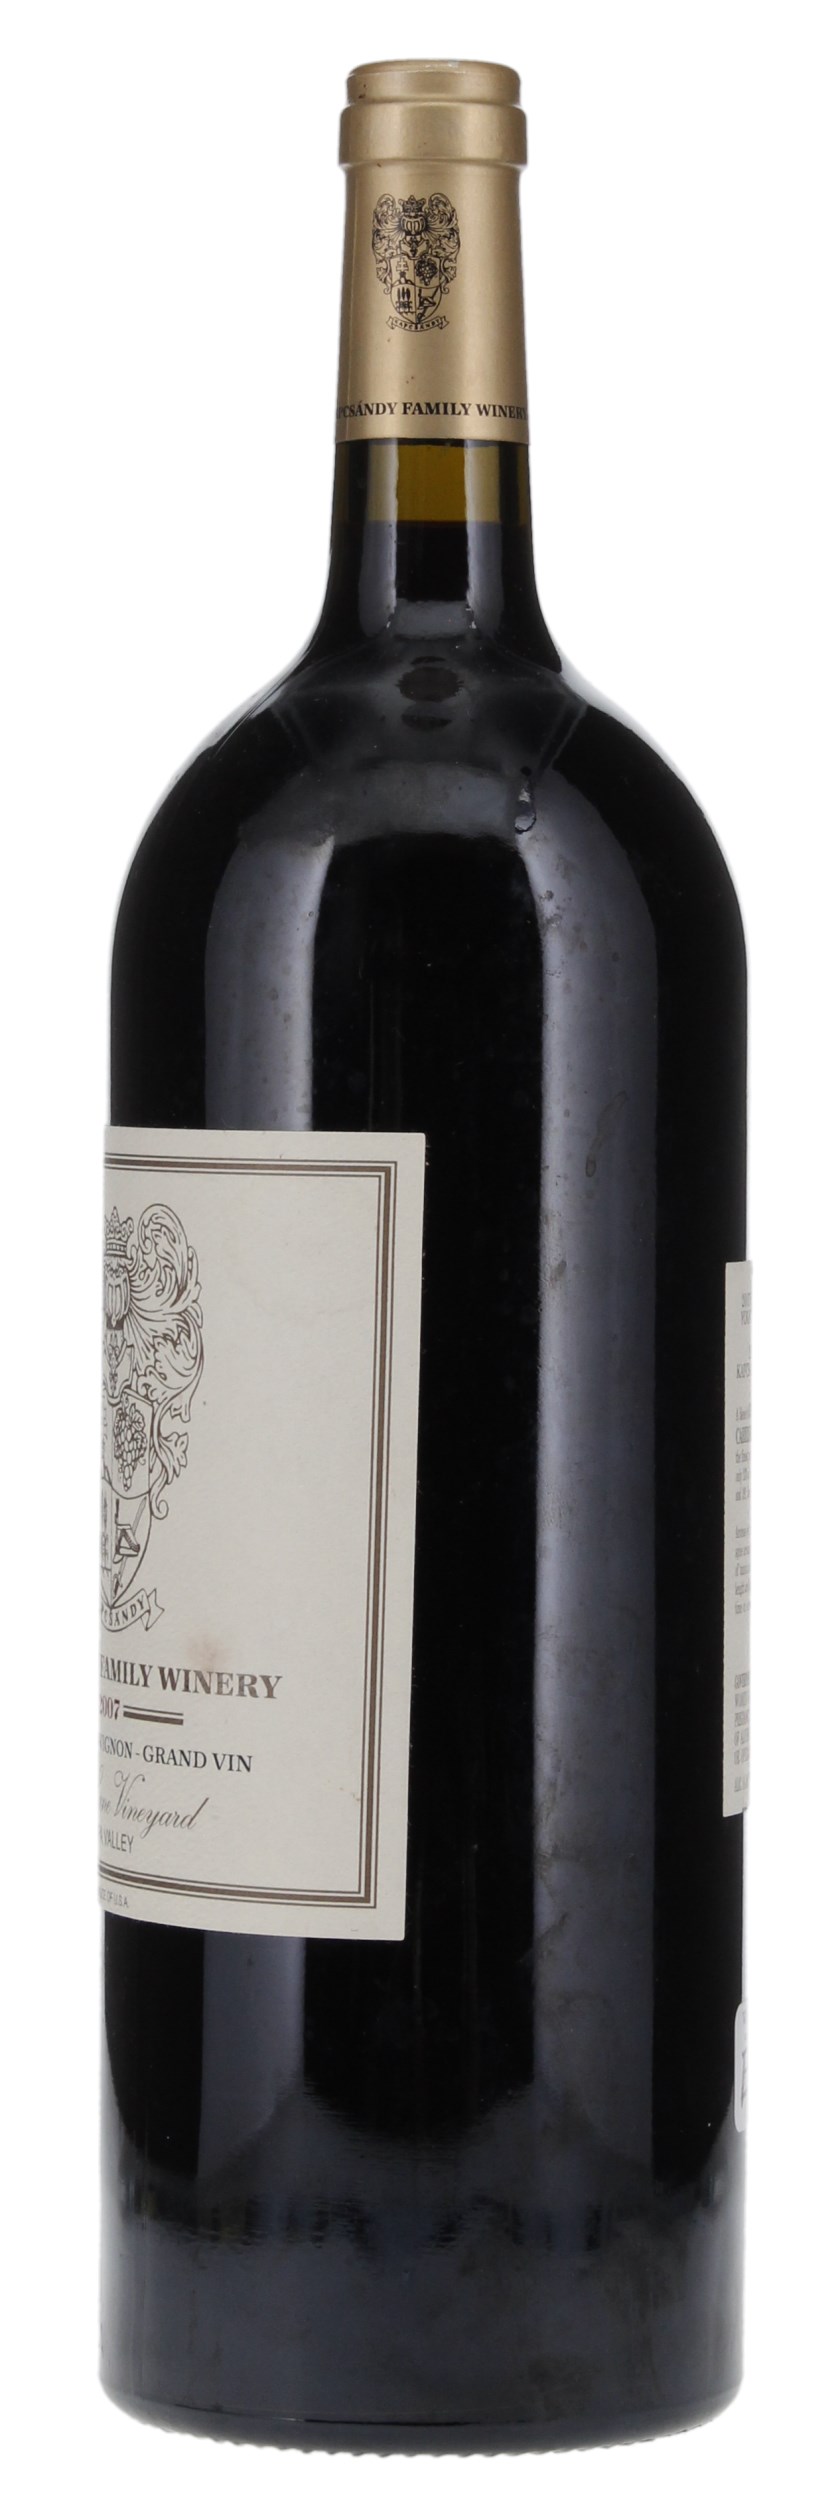 2007 Kapcsandy Family Wines State Lane Vineyard Grand Vin Cabernet Sauvignon, 1.5ltr